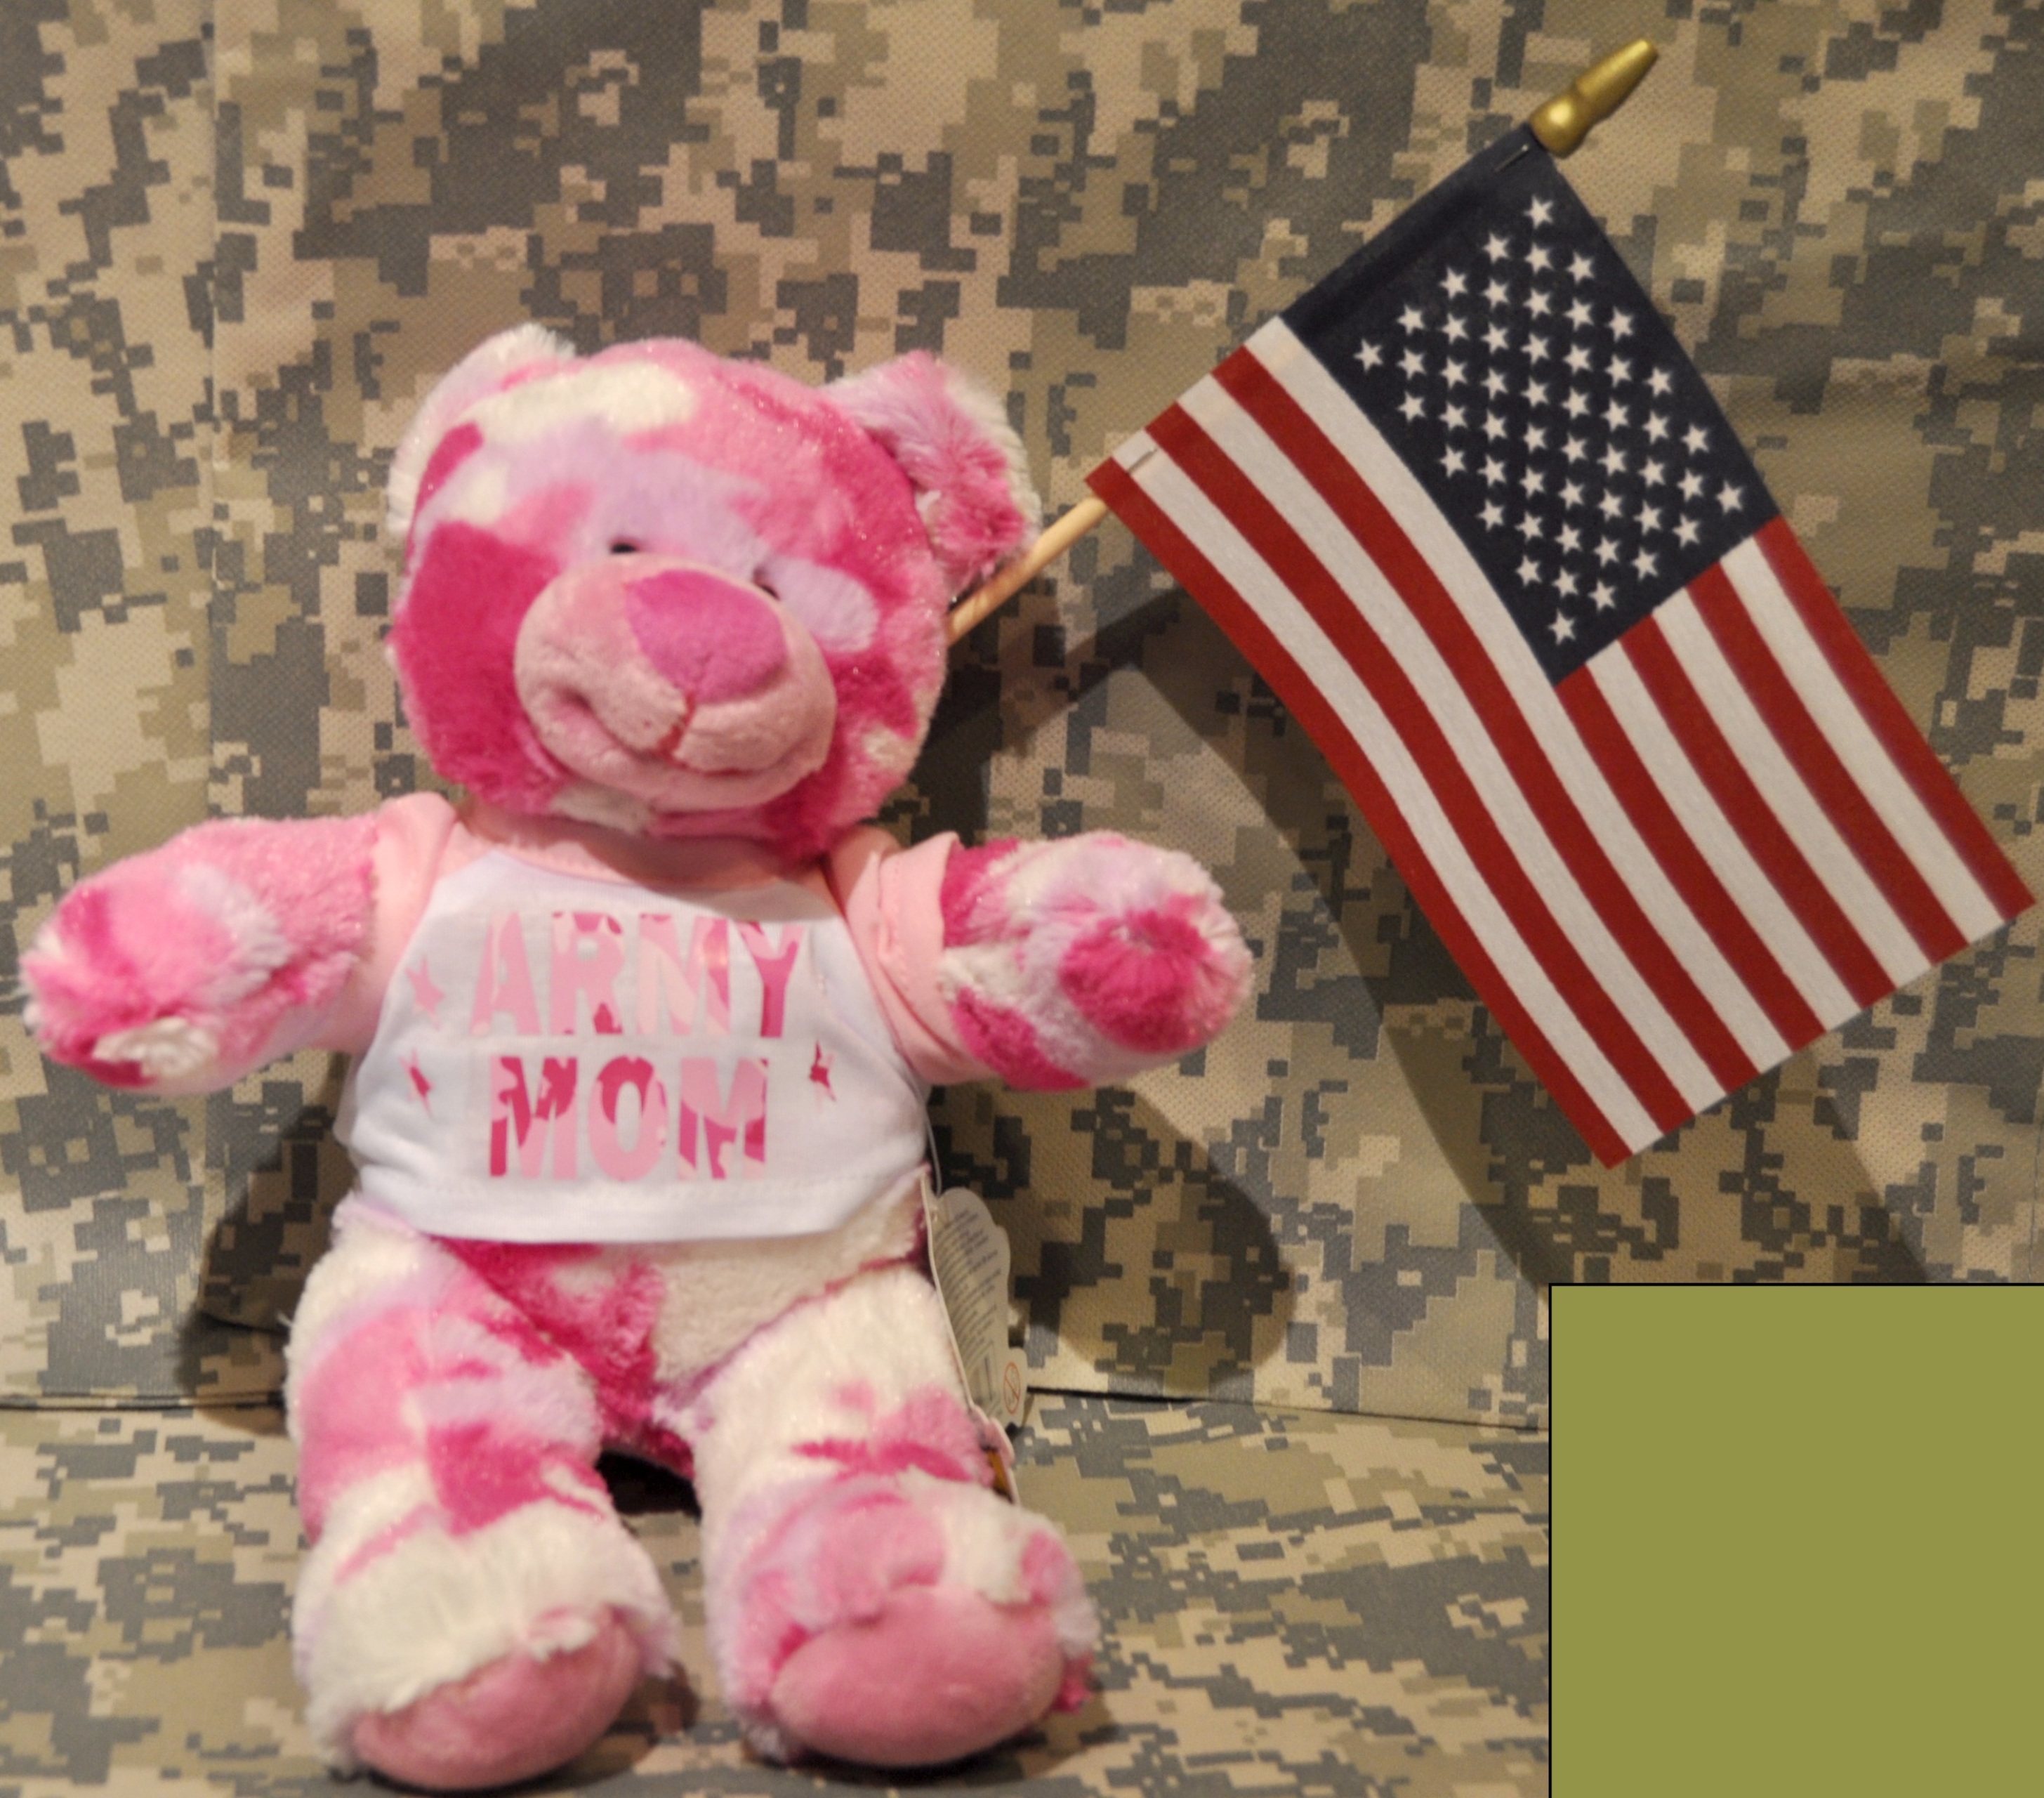 us army teddy bear